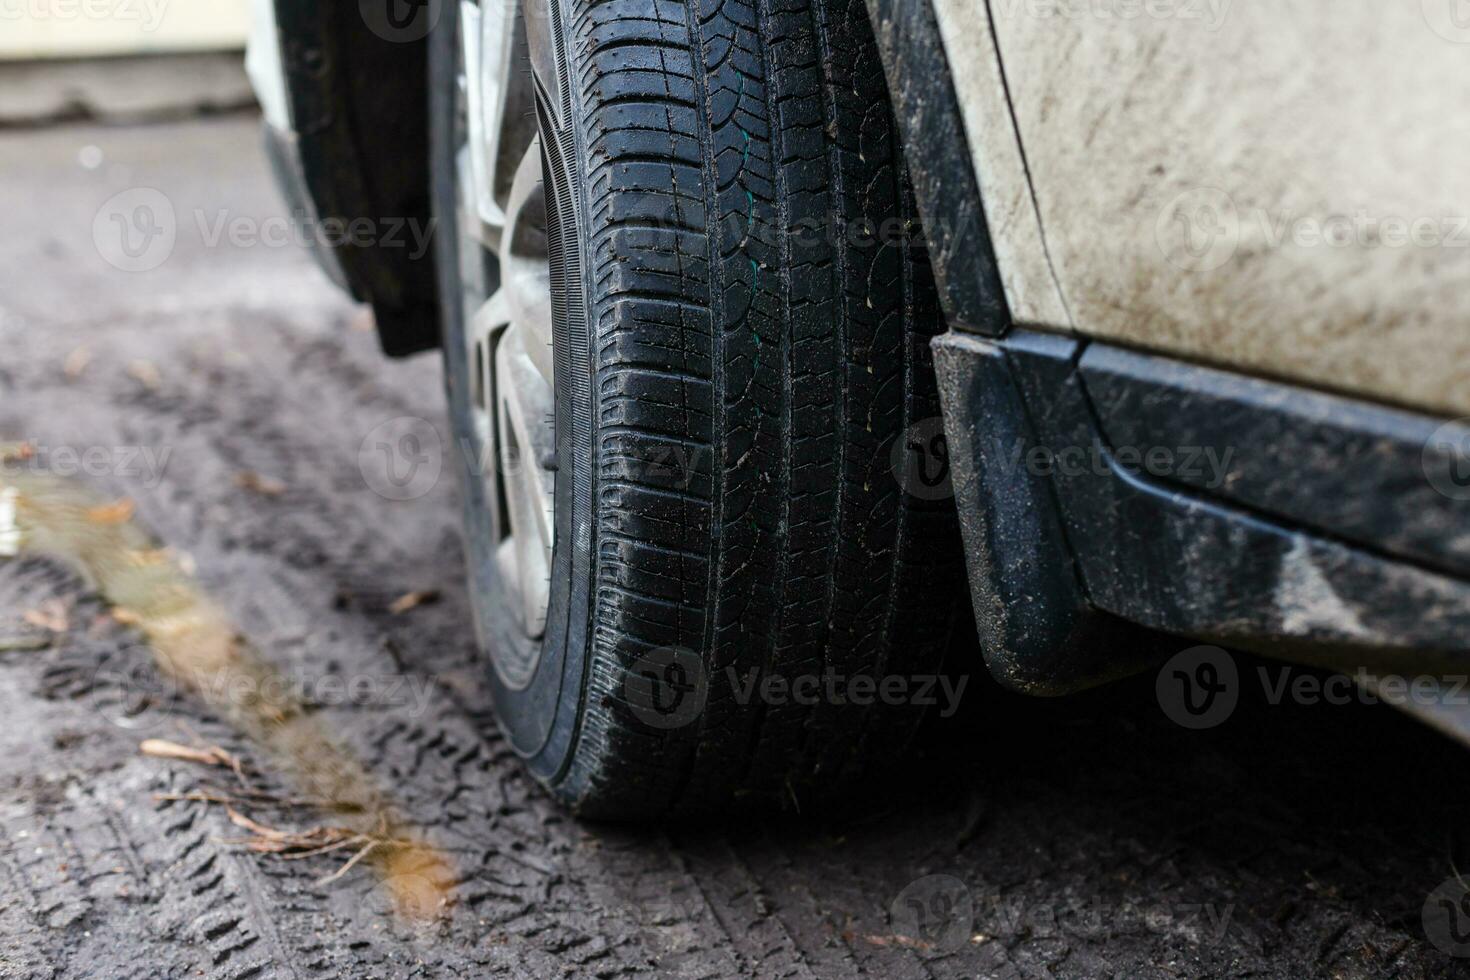 Troque um pneu de carro causado por um pneu furado usando um macaco para  levantar o carro. [download] - Designi